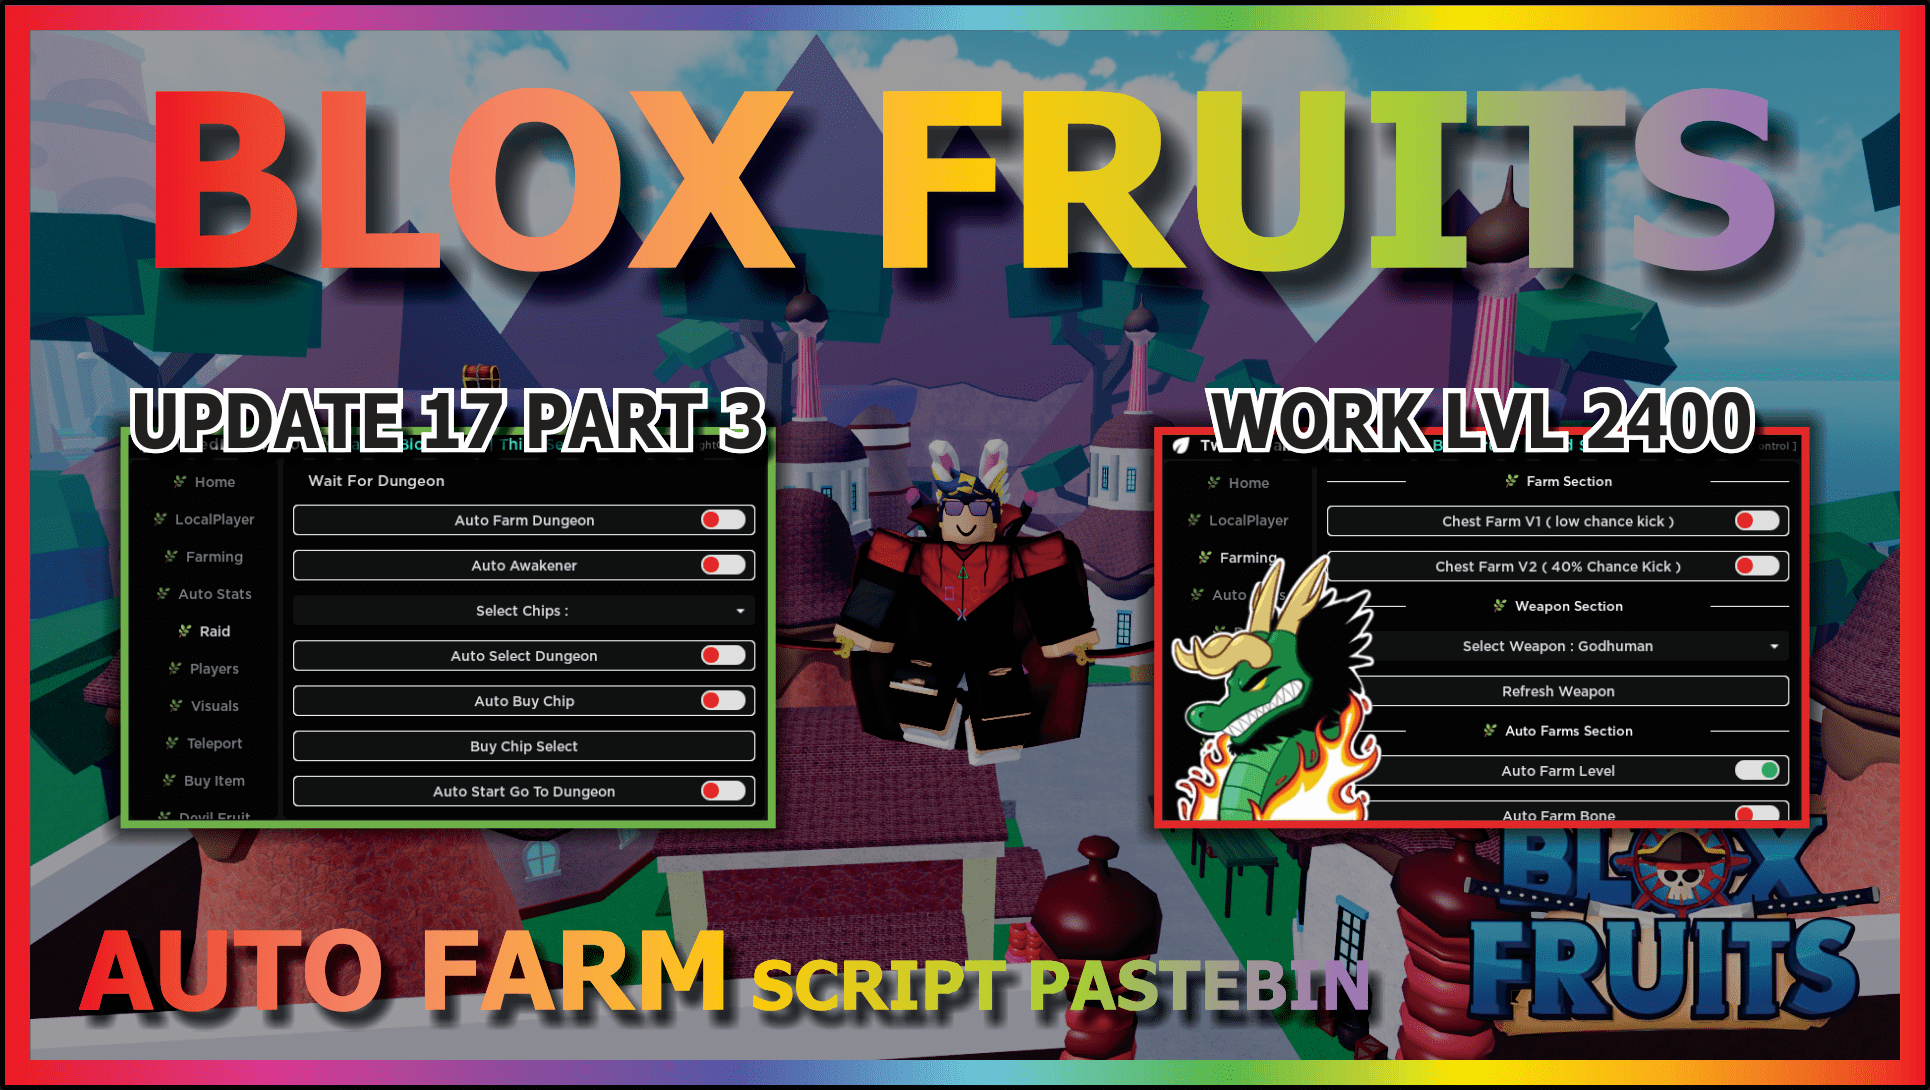 Blox Fruits script - (Check profile) #robloxscripts #robloxscript #bl